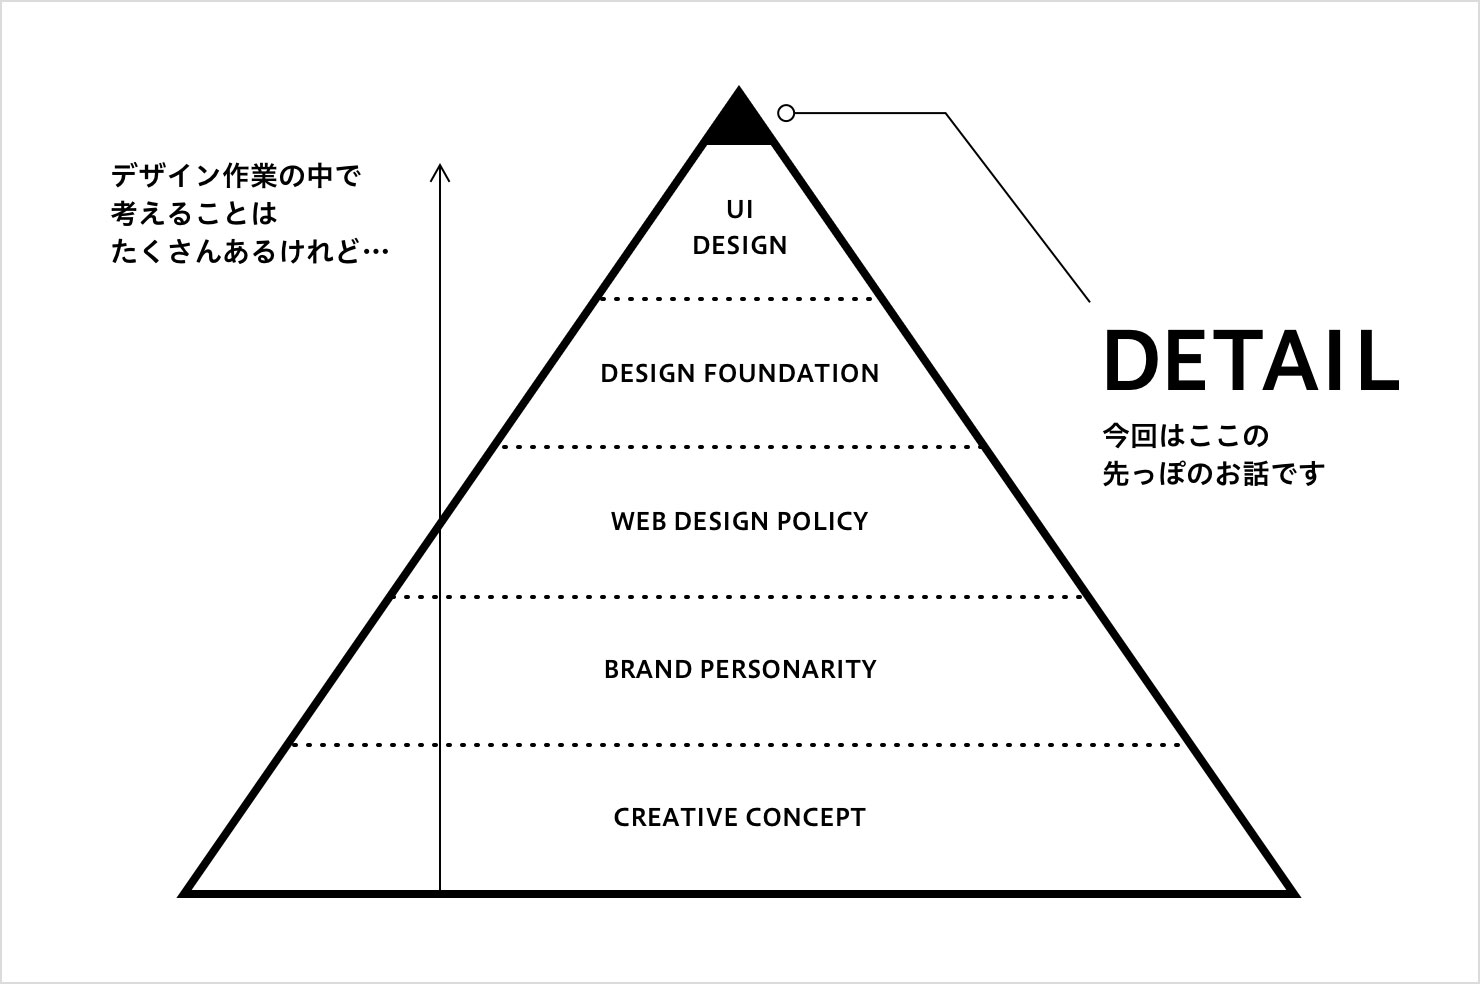 図：デザインの階層構造と本記事の対象である Detail（ピラミッドの最上部） について示したピラミッド図